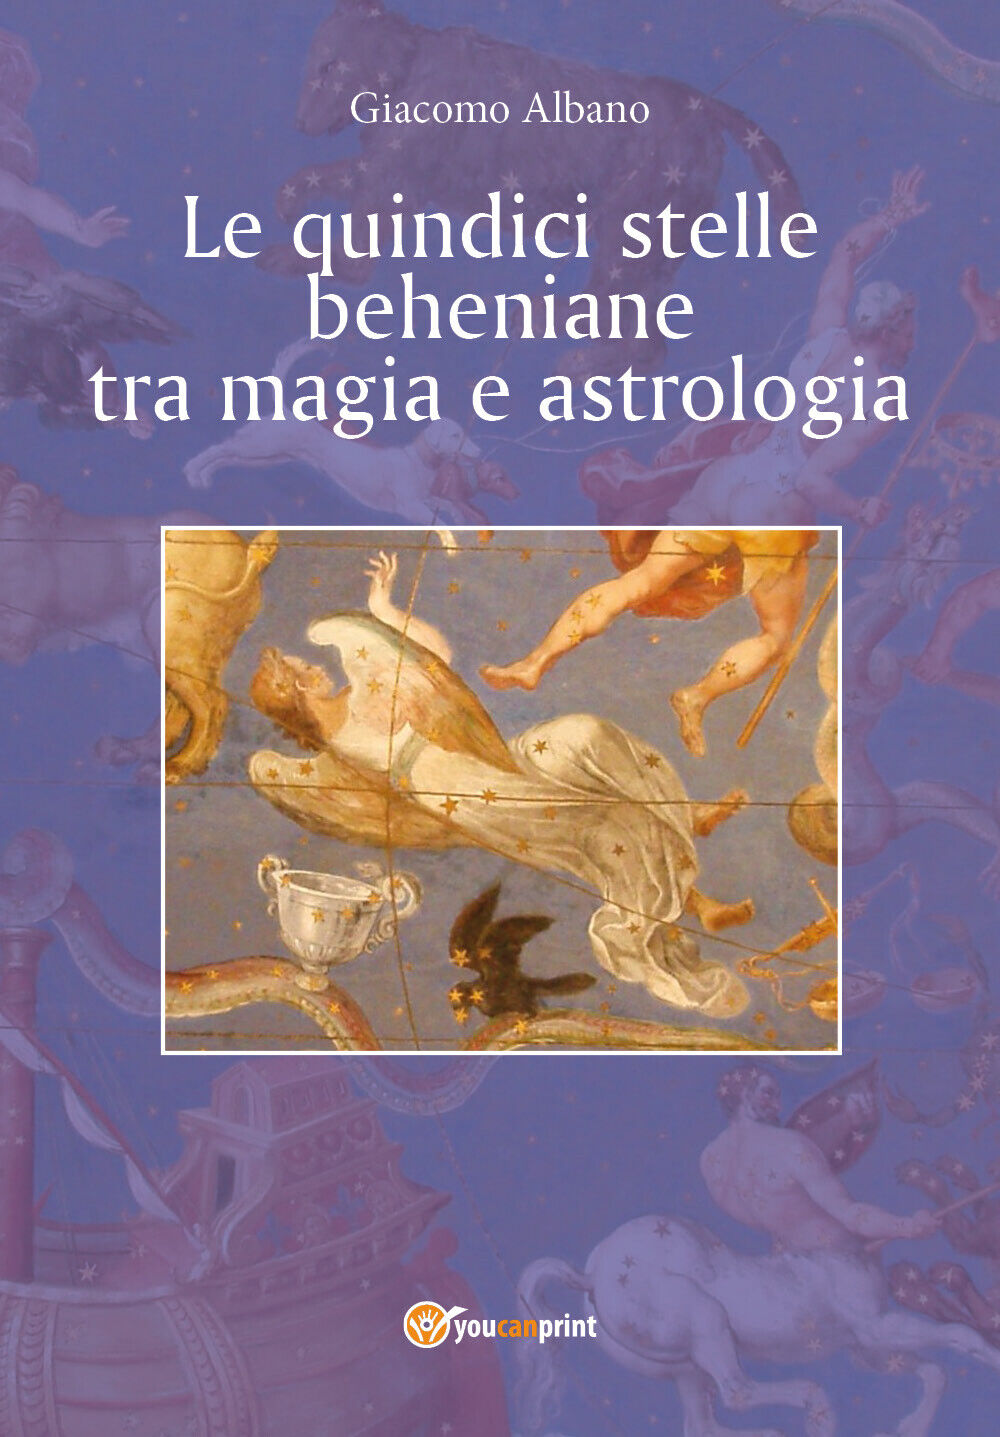 Le quindici stelle beheniane tra magia e astrologia,  di Giacomo Albano,  2018 libro usato